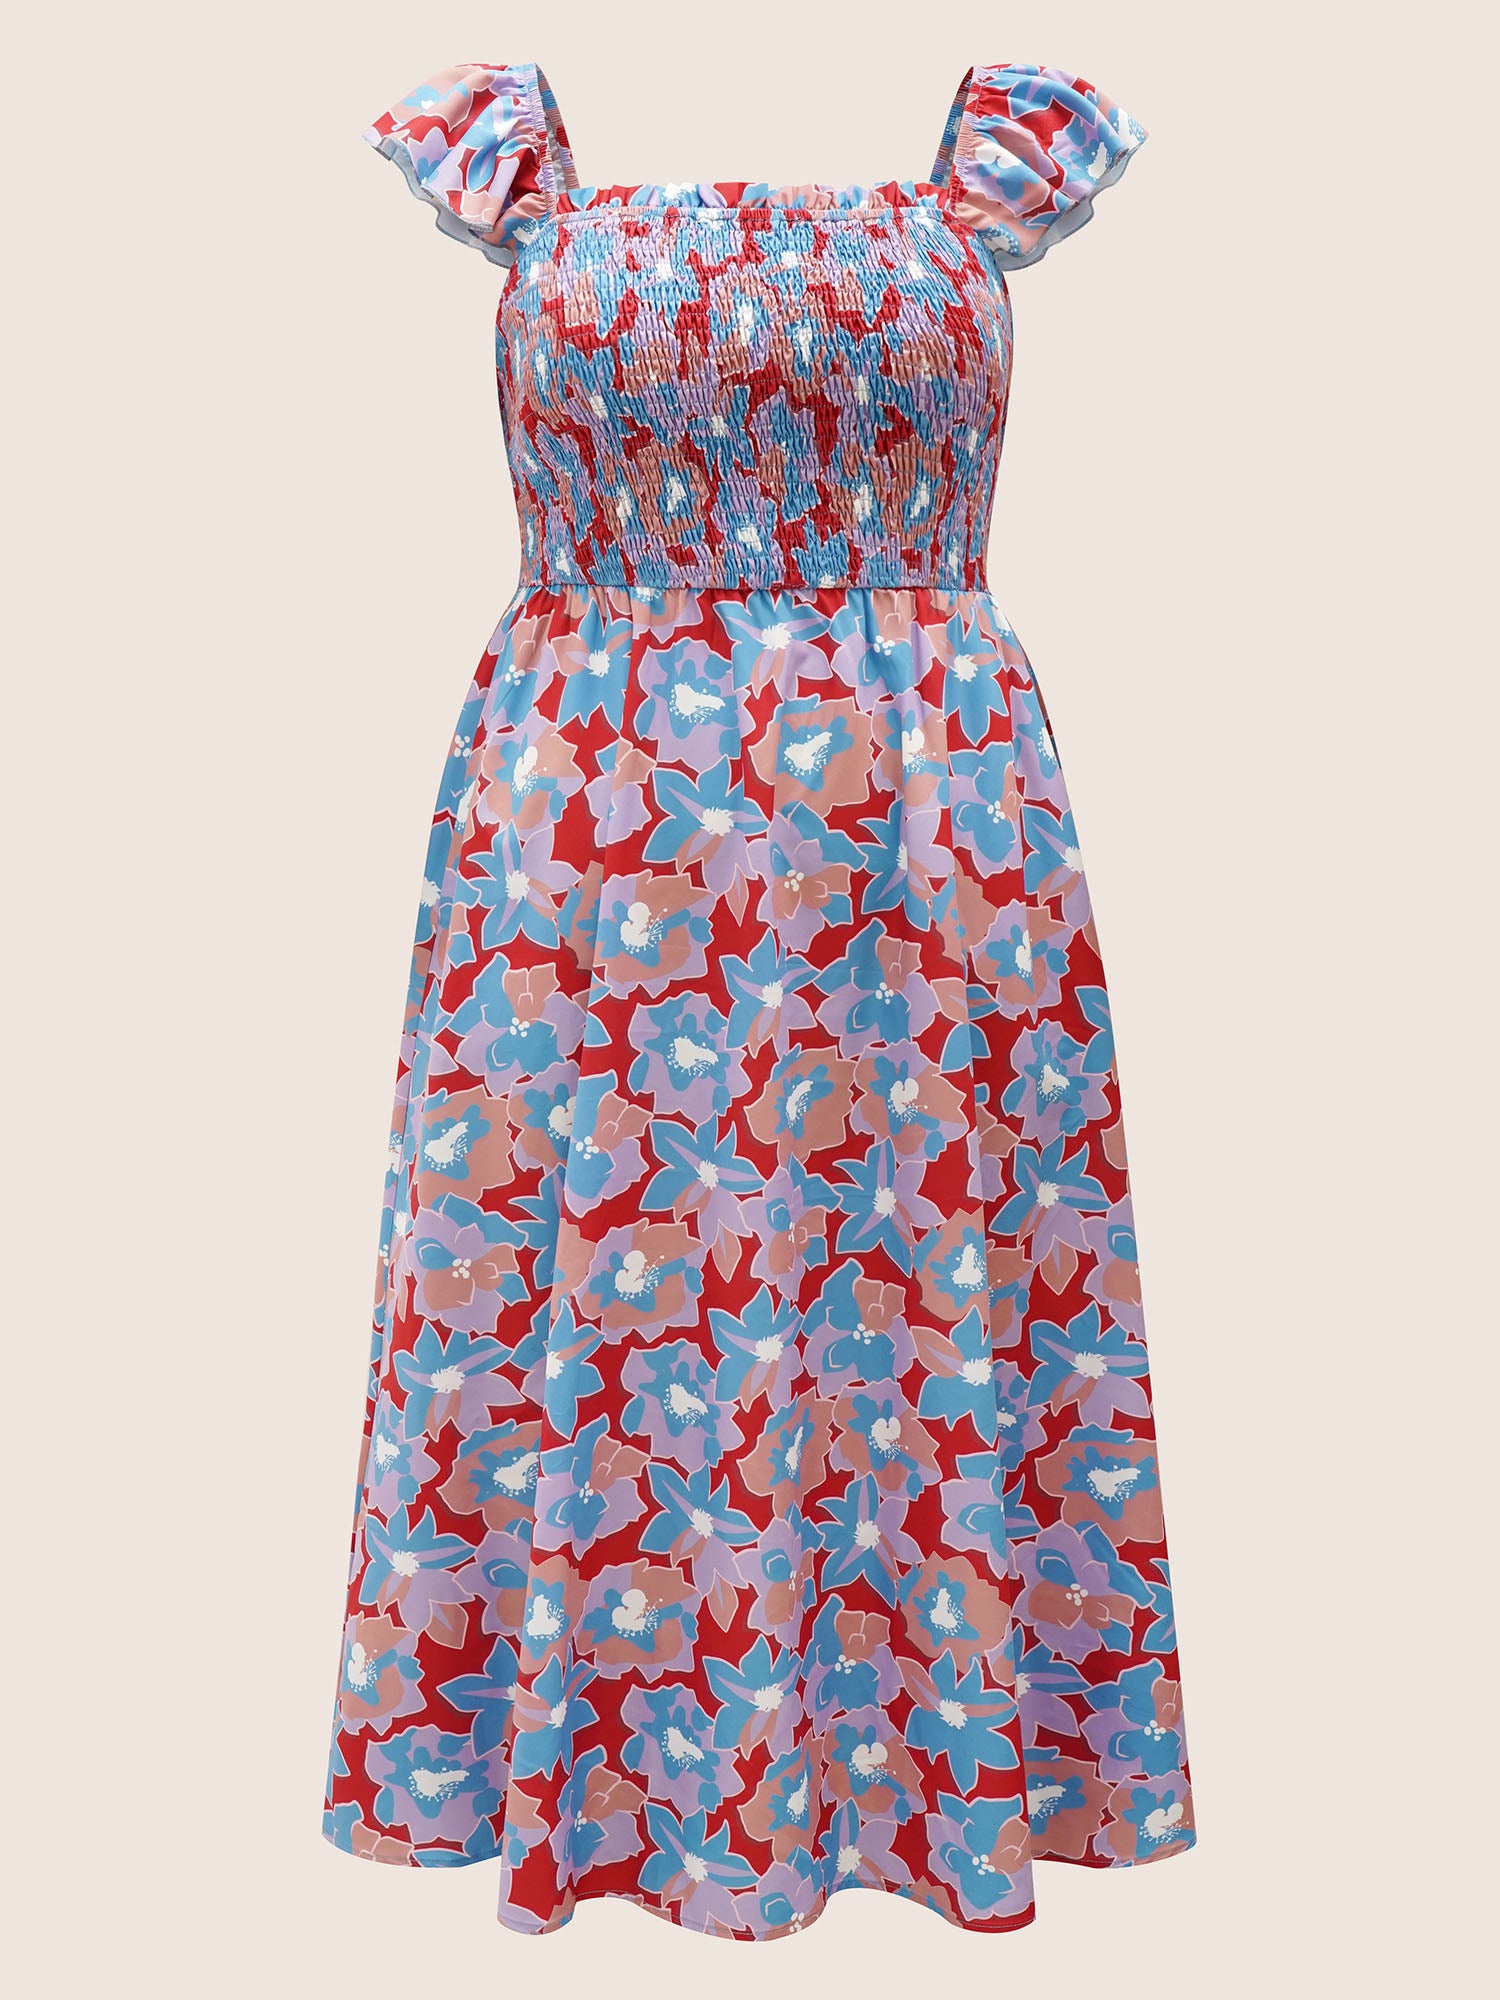 Multicolor Floral Textured Top Cap Sleeve Dress (2).JPG__PID:97a13825-f4c1-480d-abdb-22468394a7b4